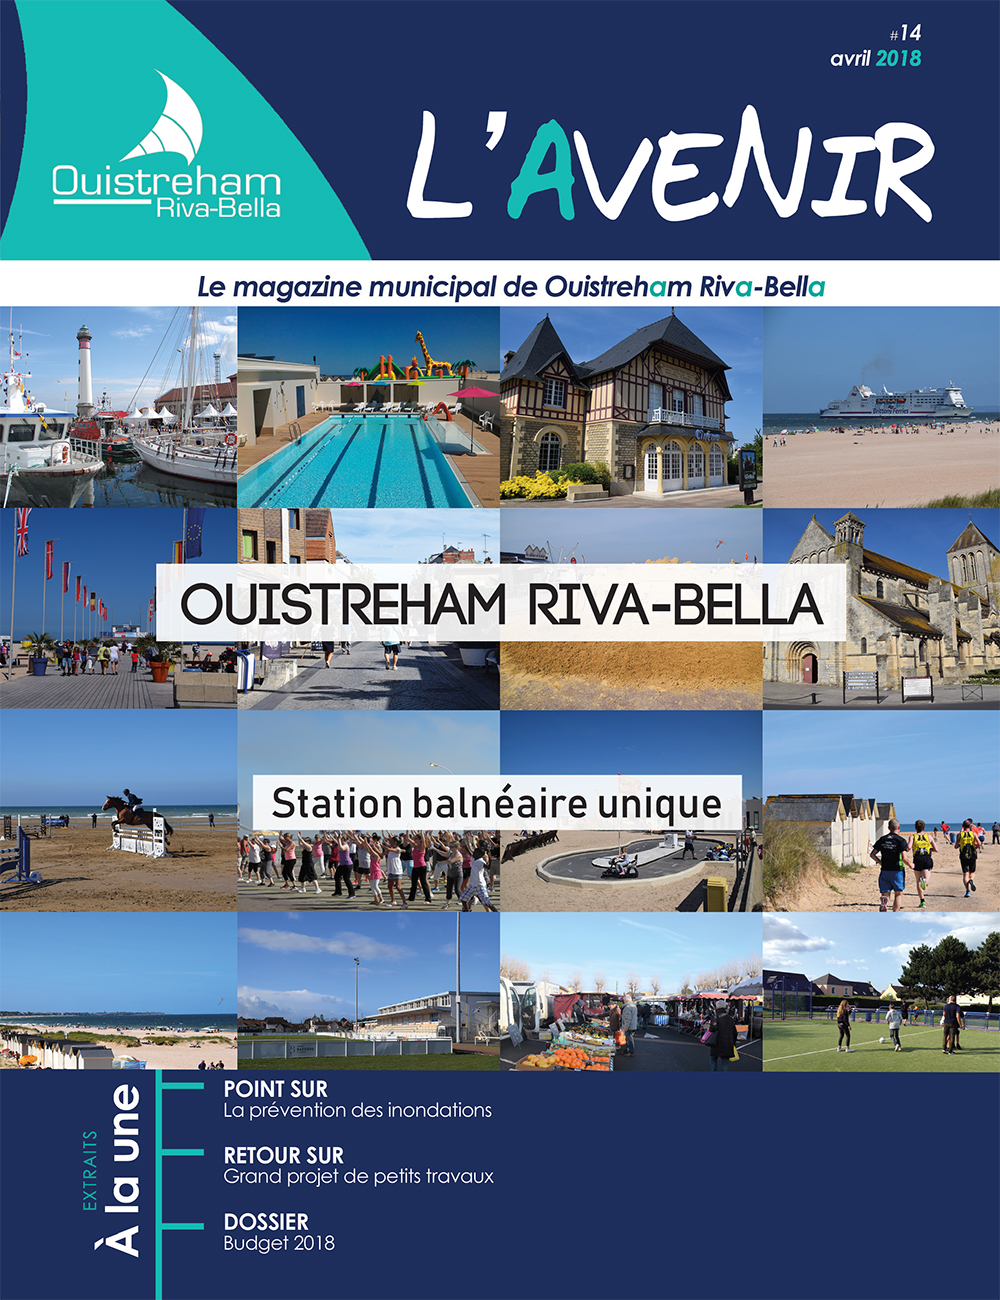 Magazine municipal - L'Avenir n°14 - Ouistreham Riva-Bella - avril 2018